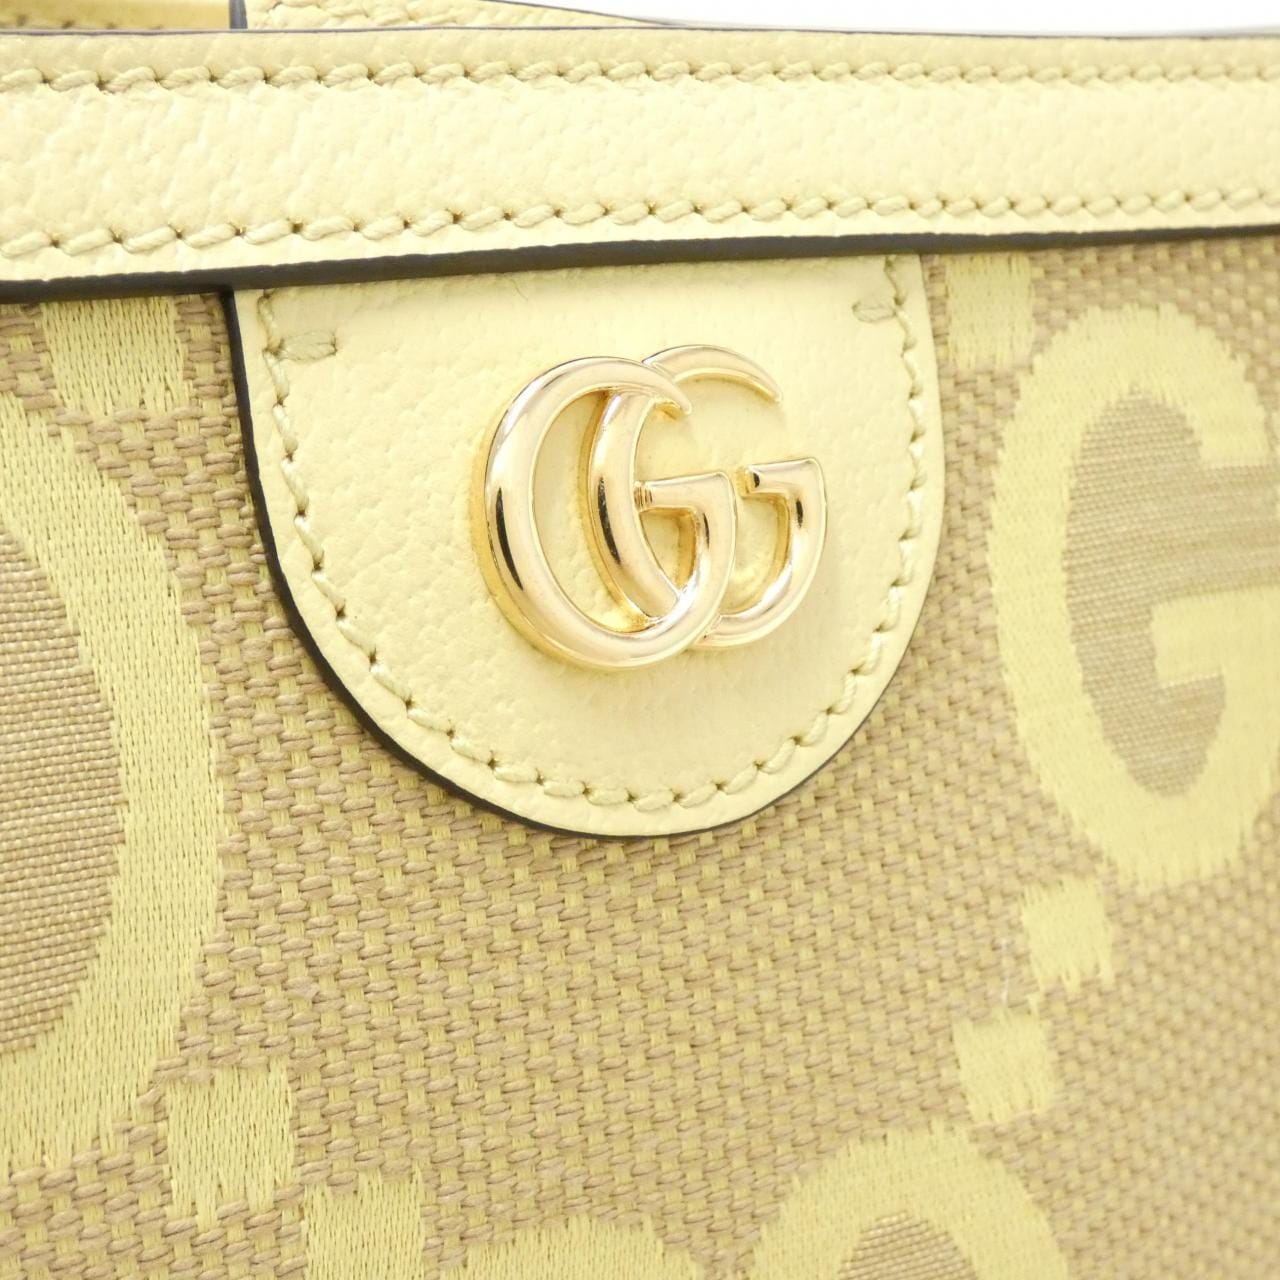 [新品] Gucci OPHIDIA 631685 UKMBG 包